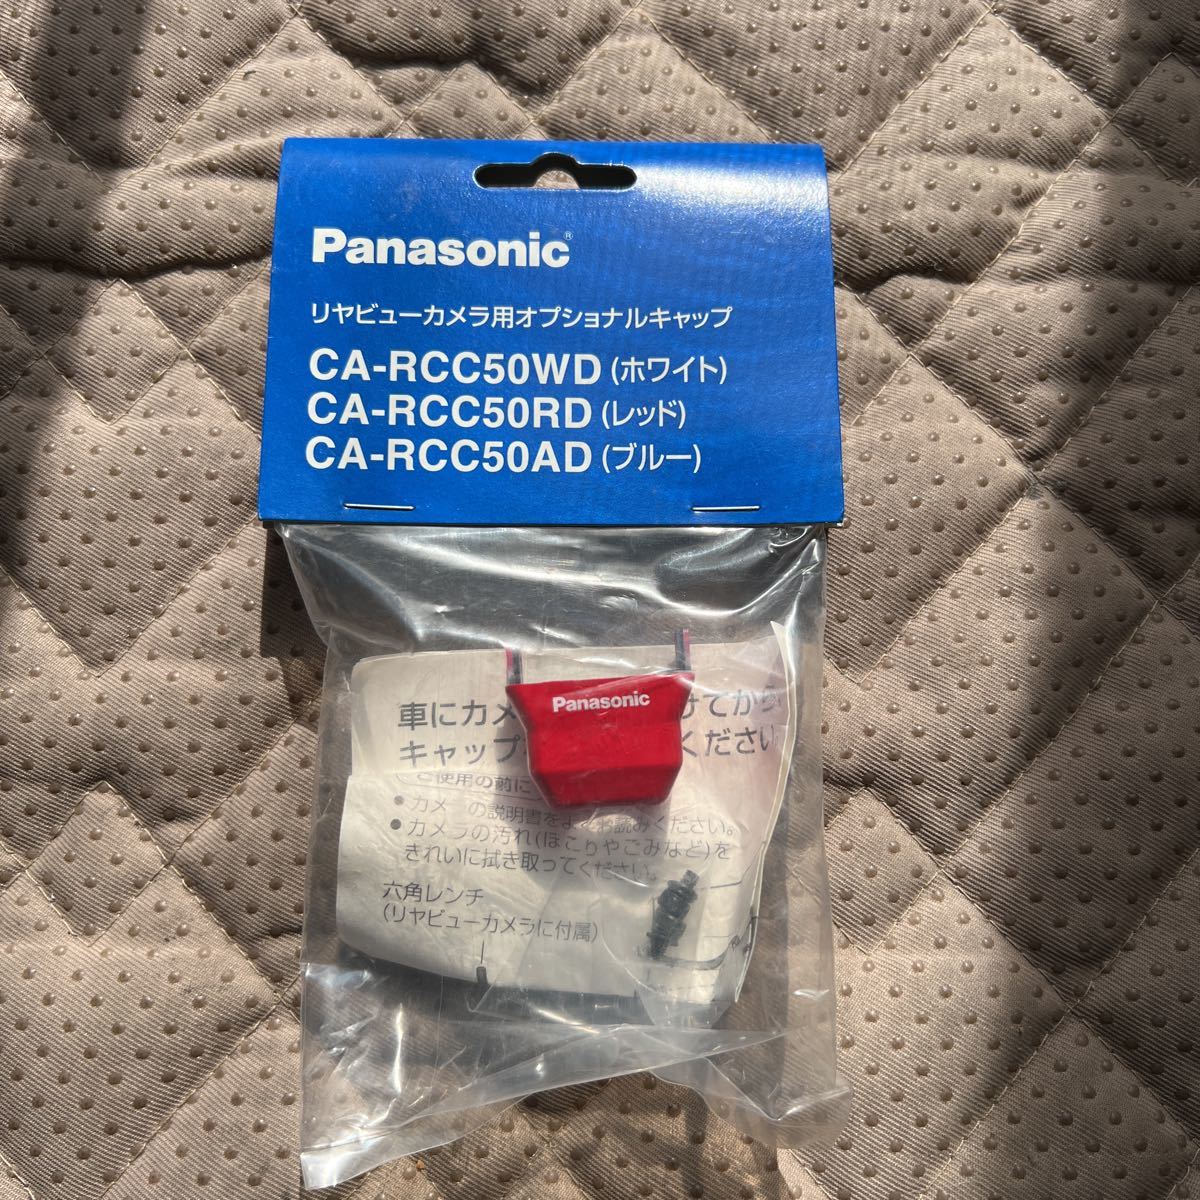 Panasonic パナソニック リヤビュー バックカメラ用 オプションカバー CA-RCC50RD レッド 未使用品 CY-RC50D/50KD用_画像1